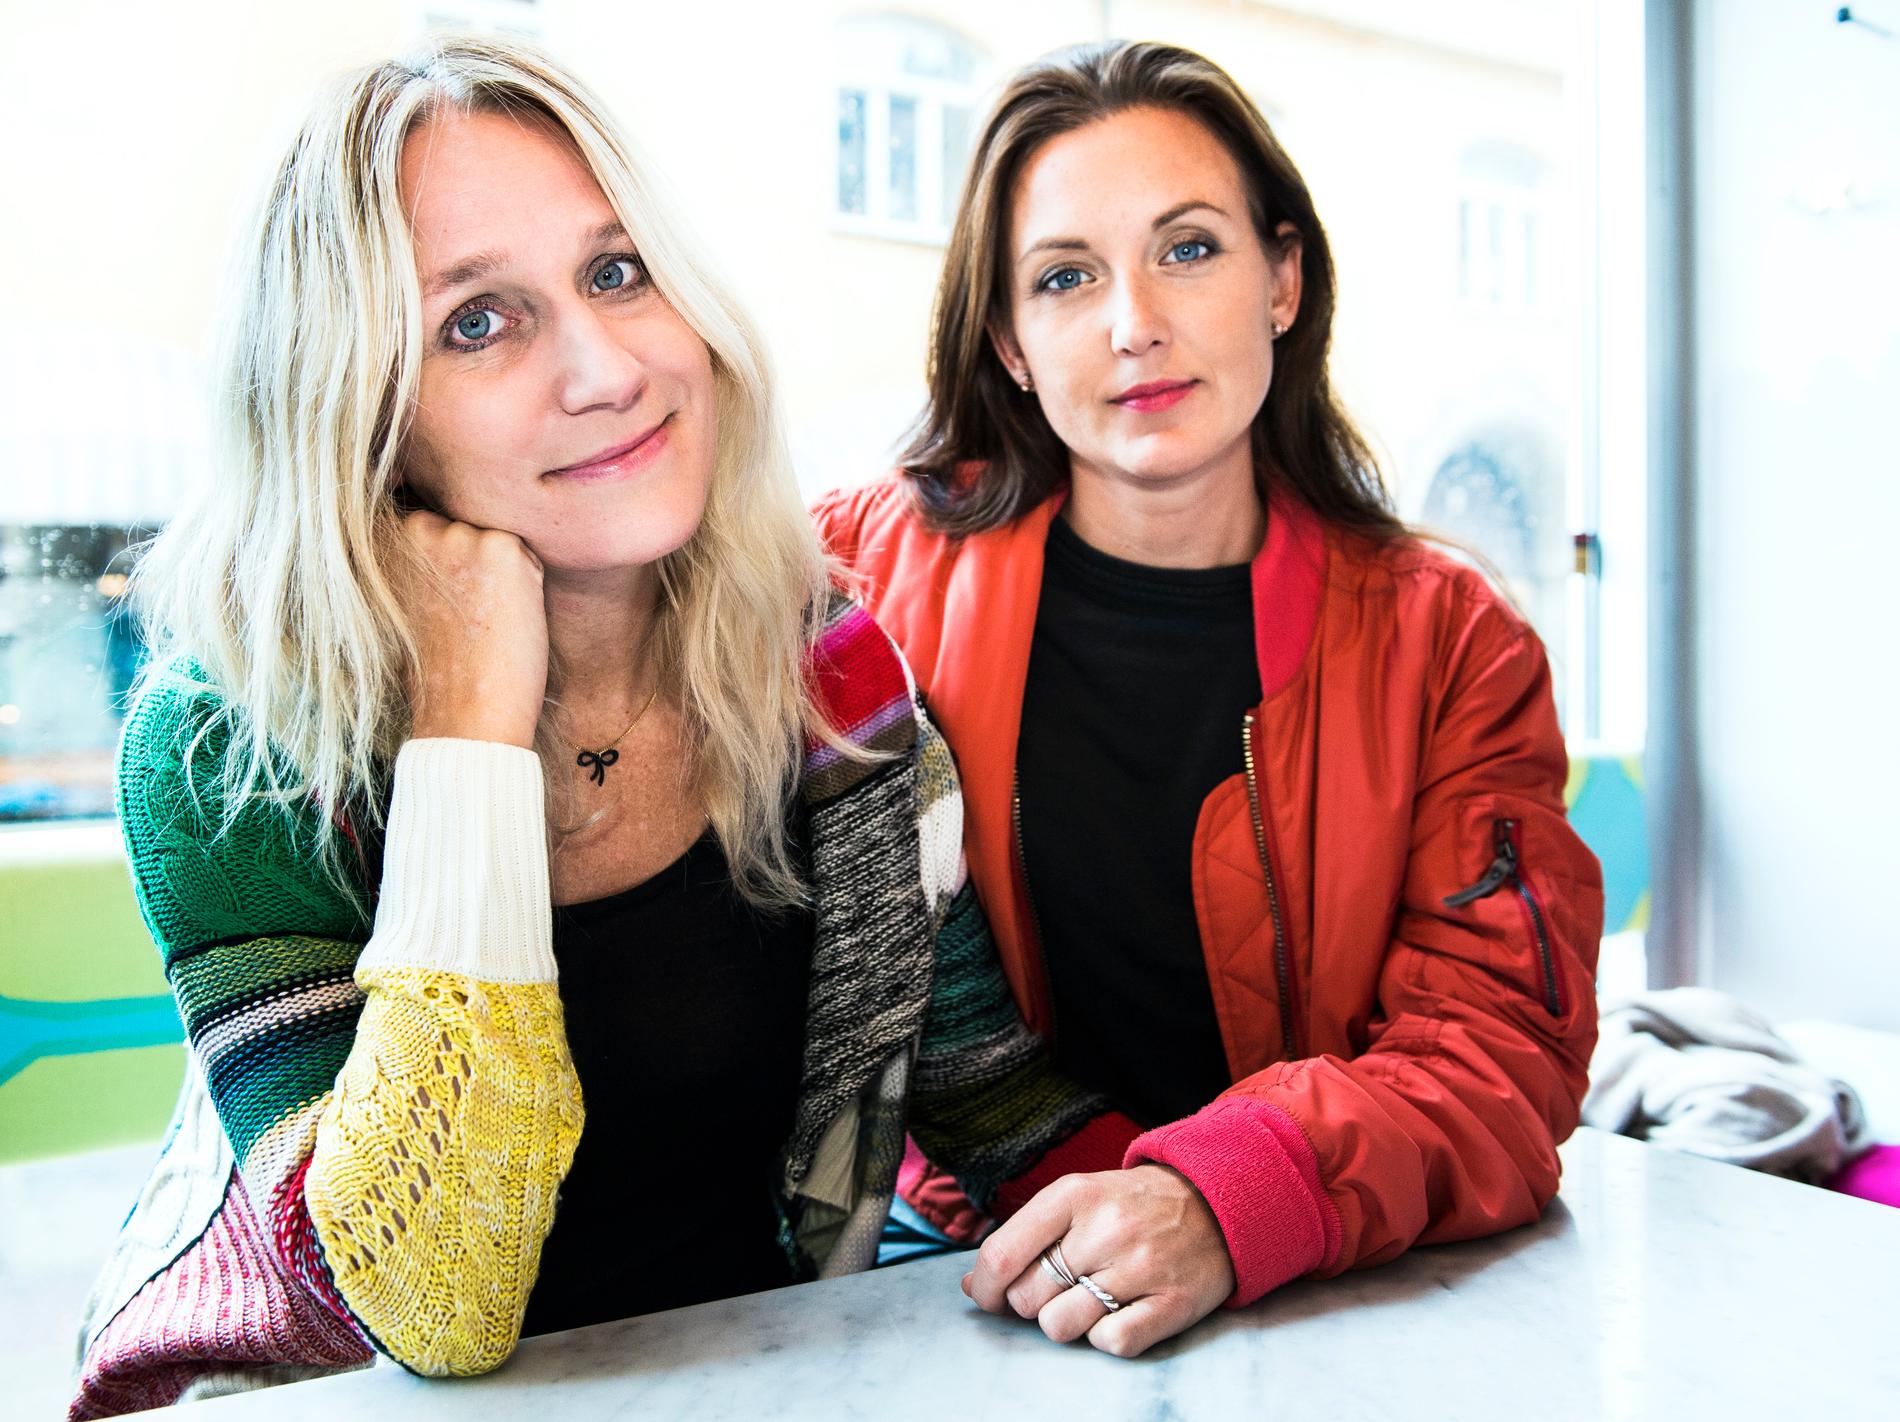 Ann Söderlund är bland annat känd för ”Djävulsdansen” på SVT. Den ledde hon tillsammans med Sanna Lundell.